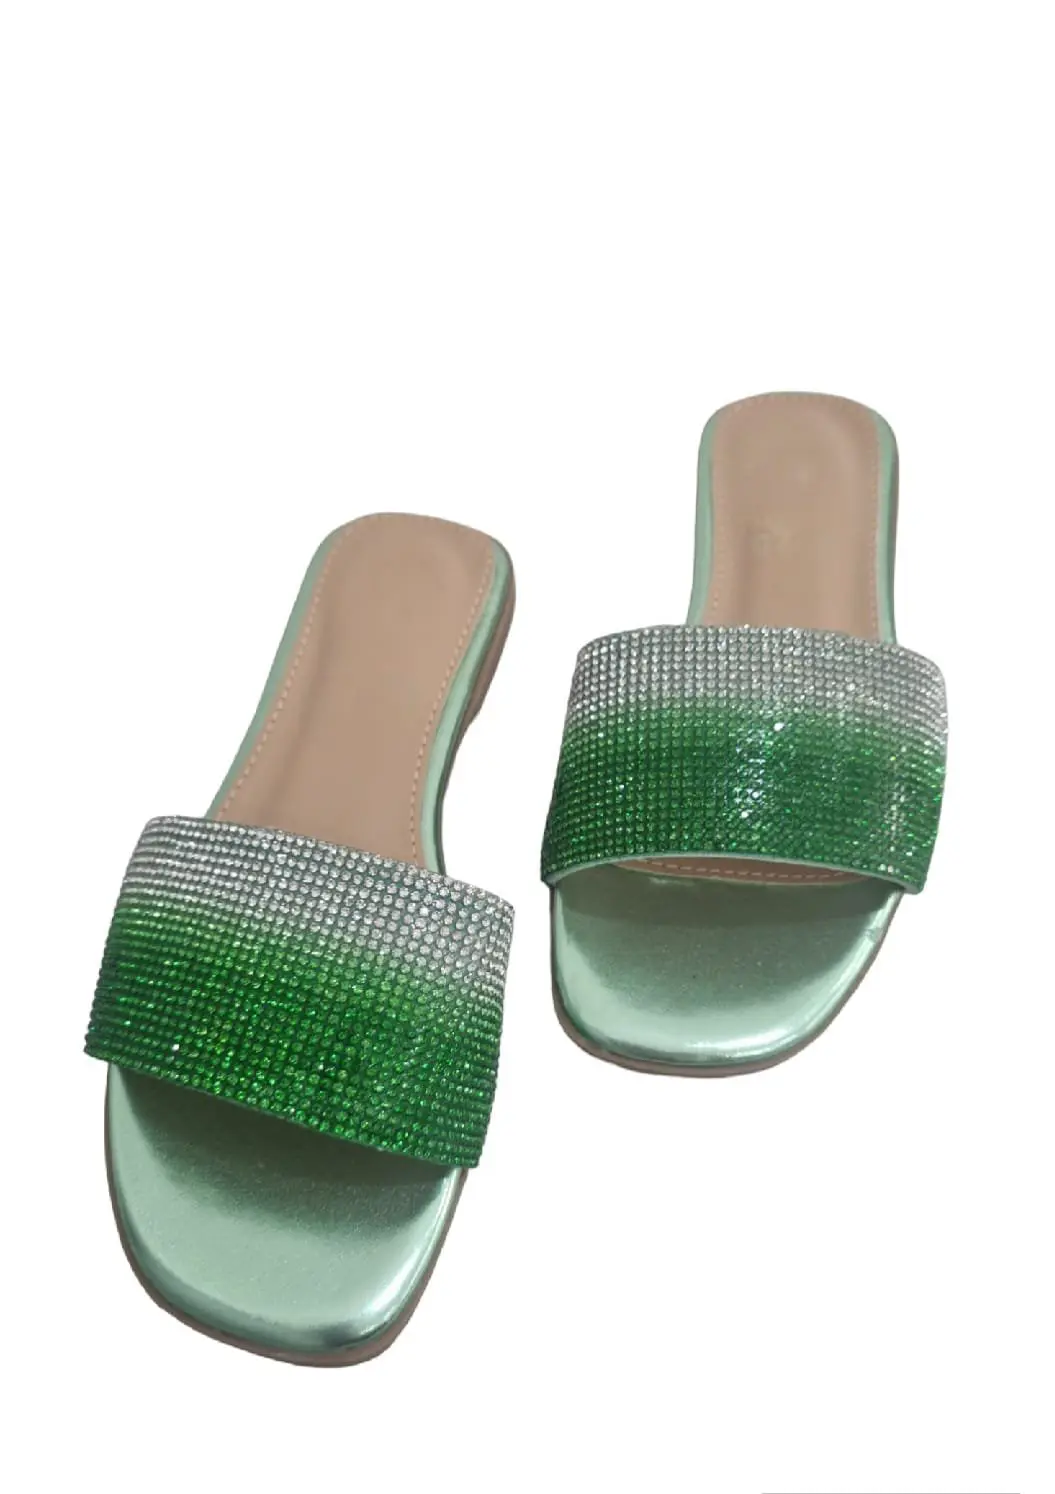 Chaussons verts à points lumineux, hauteur 1,5 cm, coussin confort.